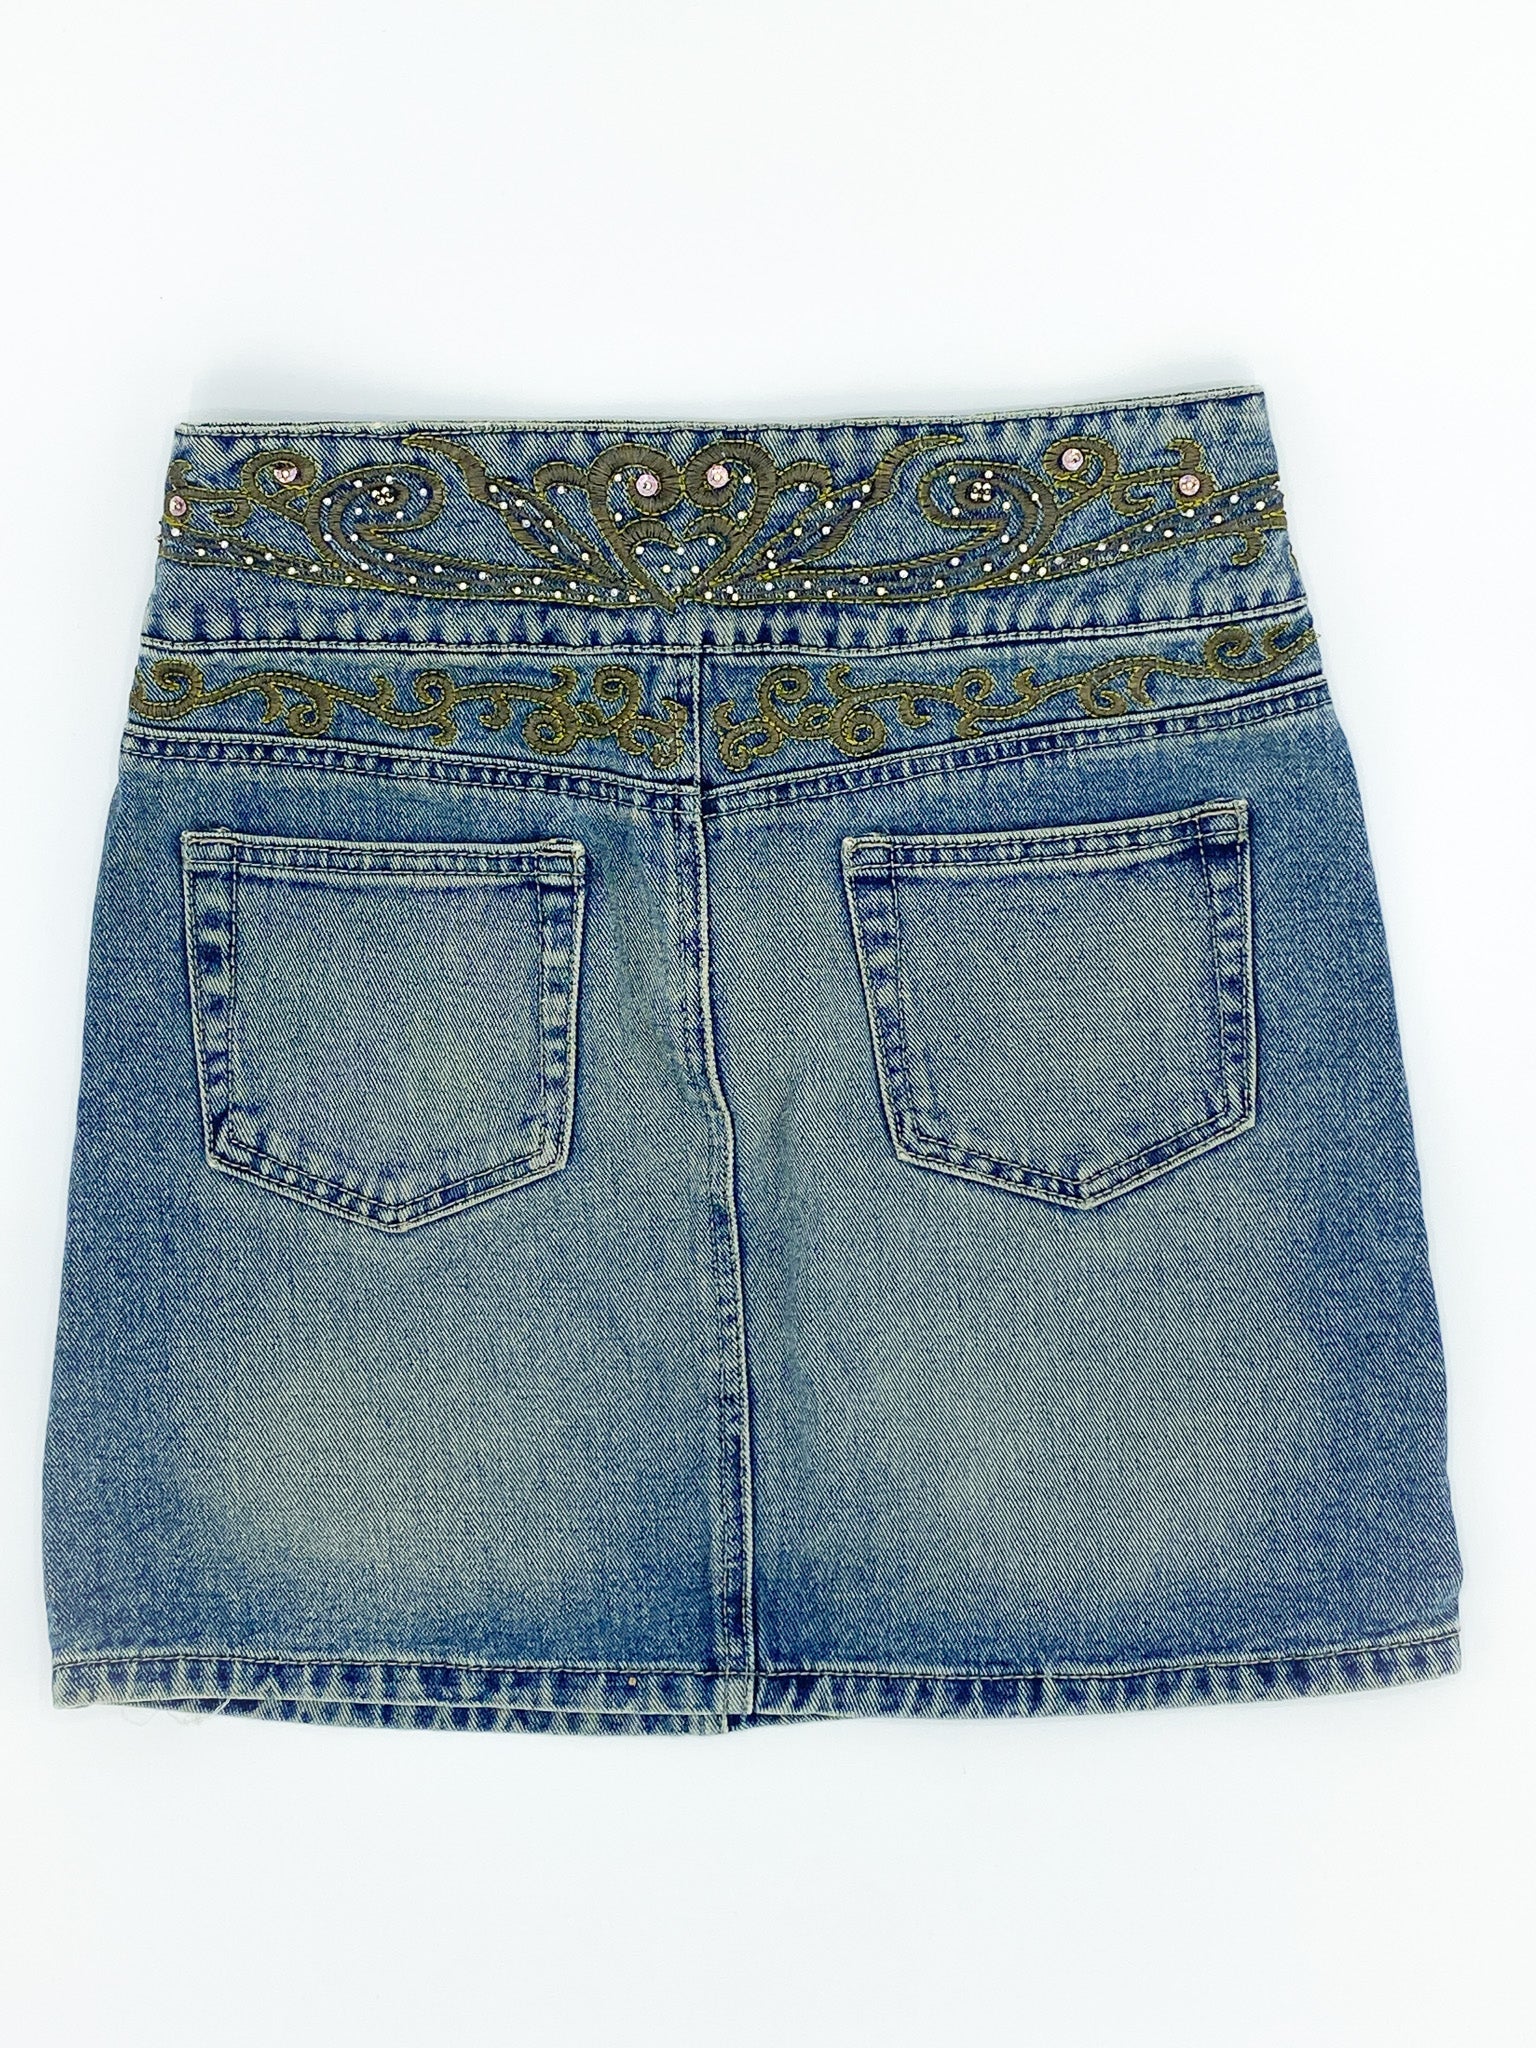 Vintage Embroidered Denim Mini Skirt - M - Playground Vintage